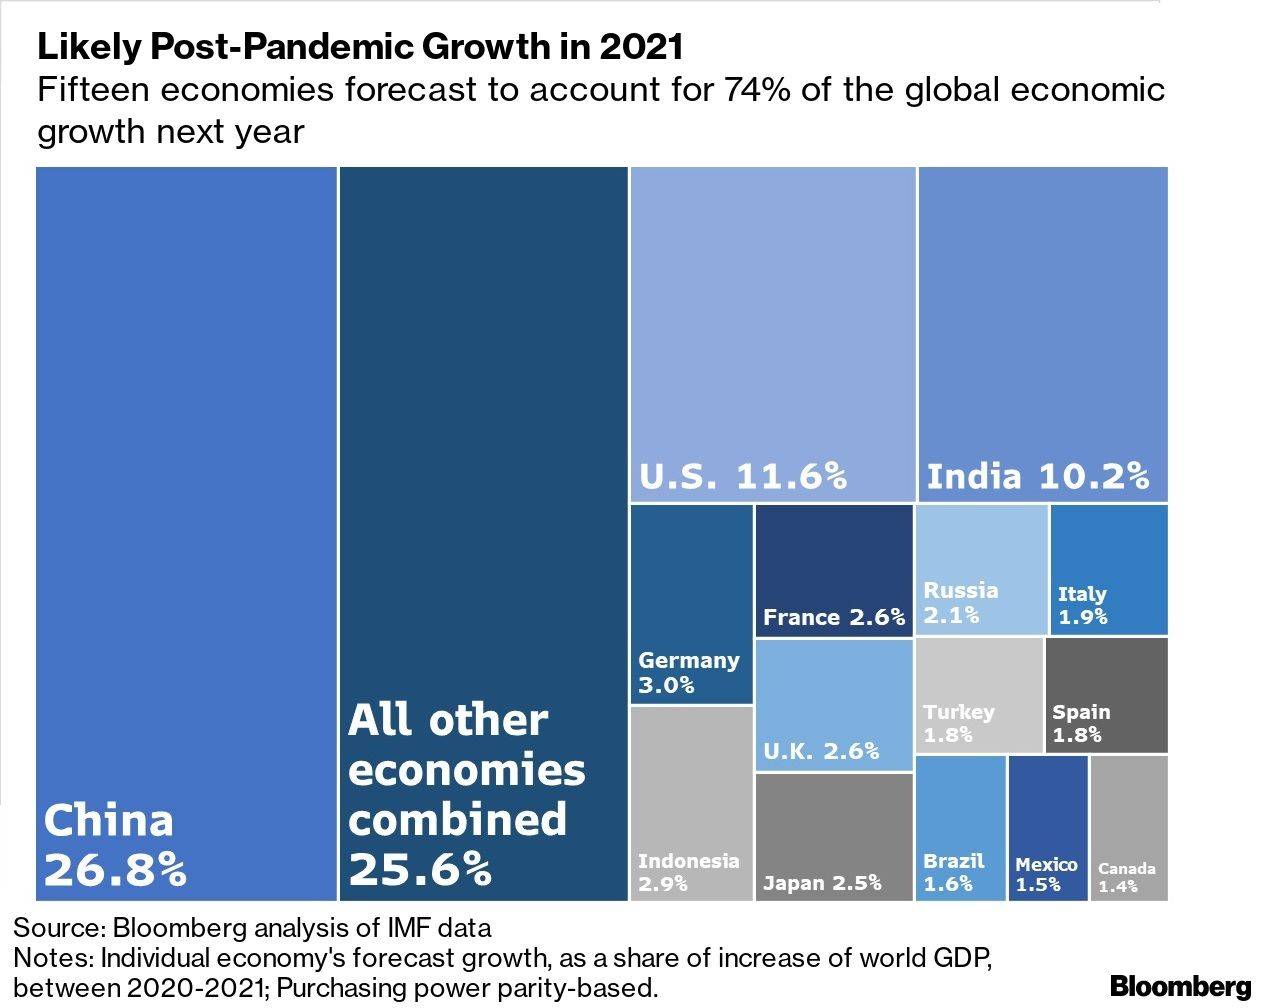 Proyección de las 15 economías que representarían 74% del crecimiento económico global el próximo año.